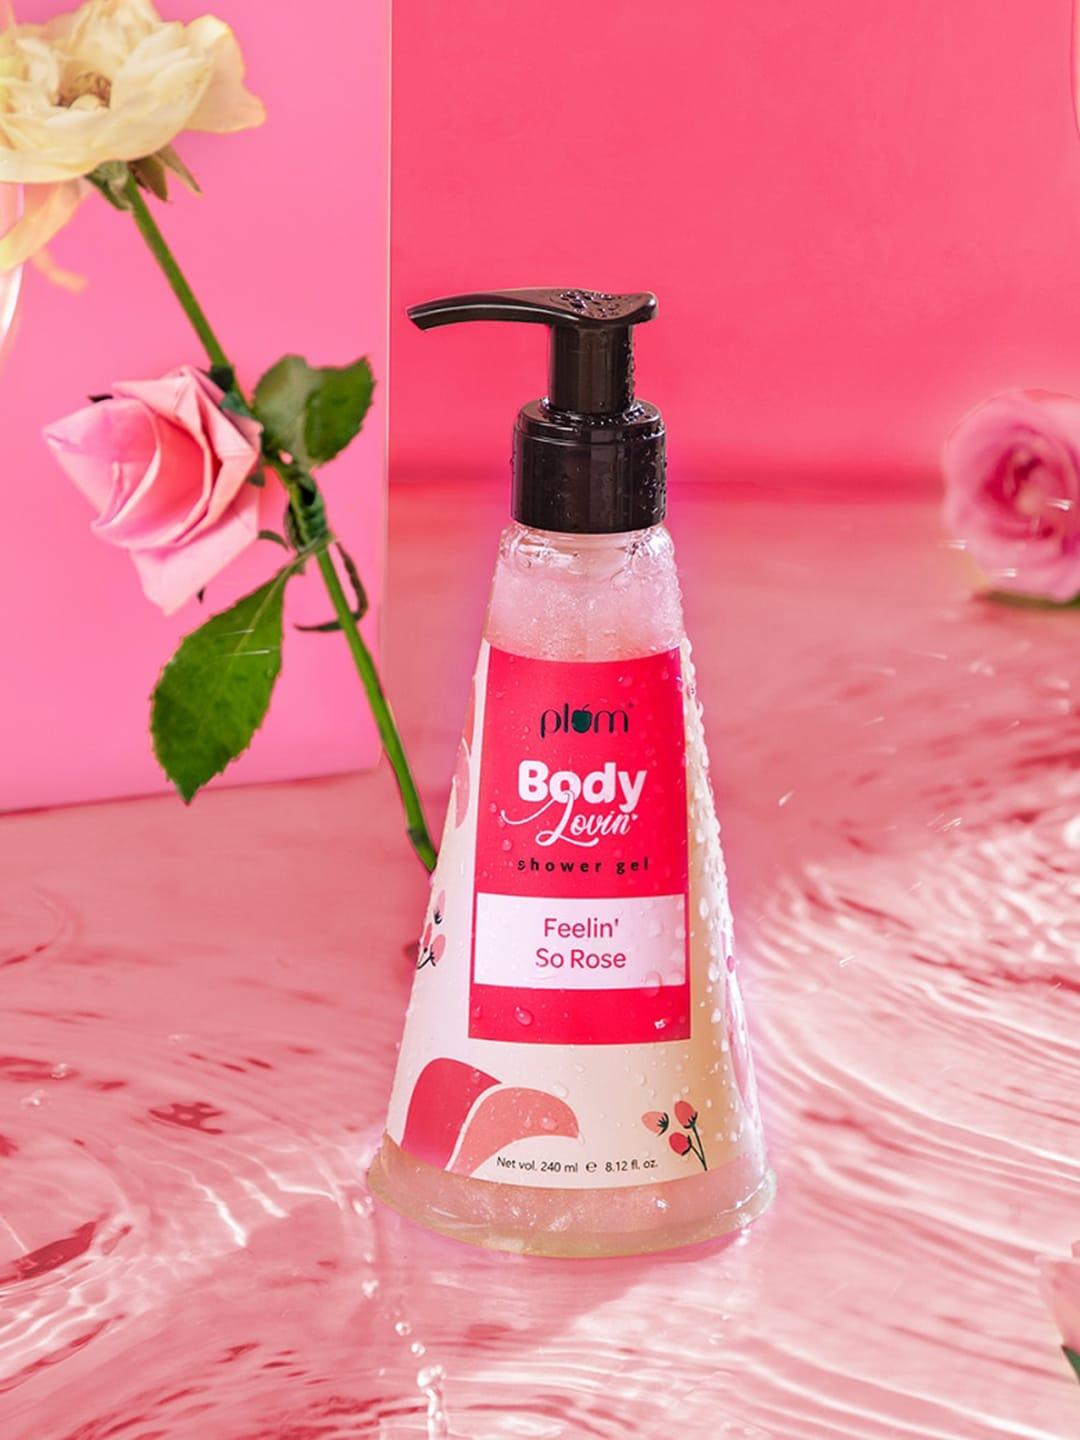 plum bodylovin' feelin' so rose shower gel - 240 ml